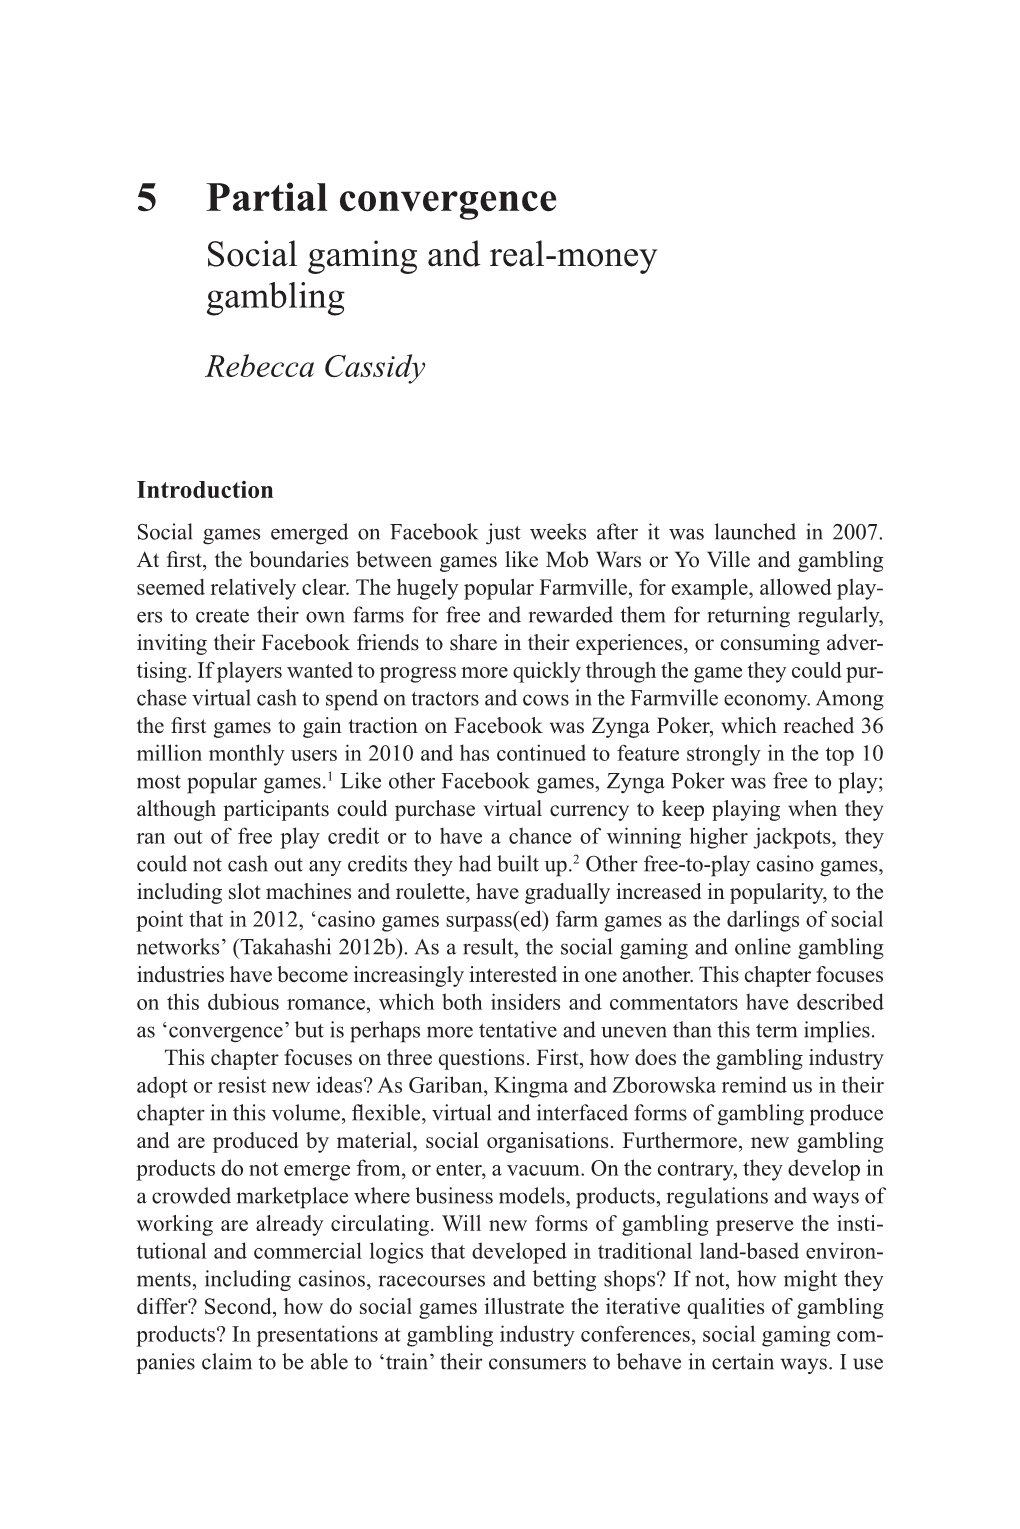 Social Gaming and Real-Money Gambling